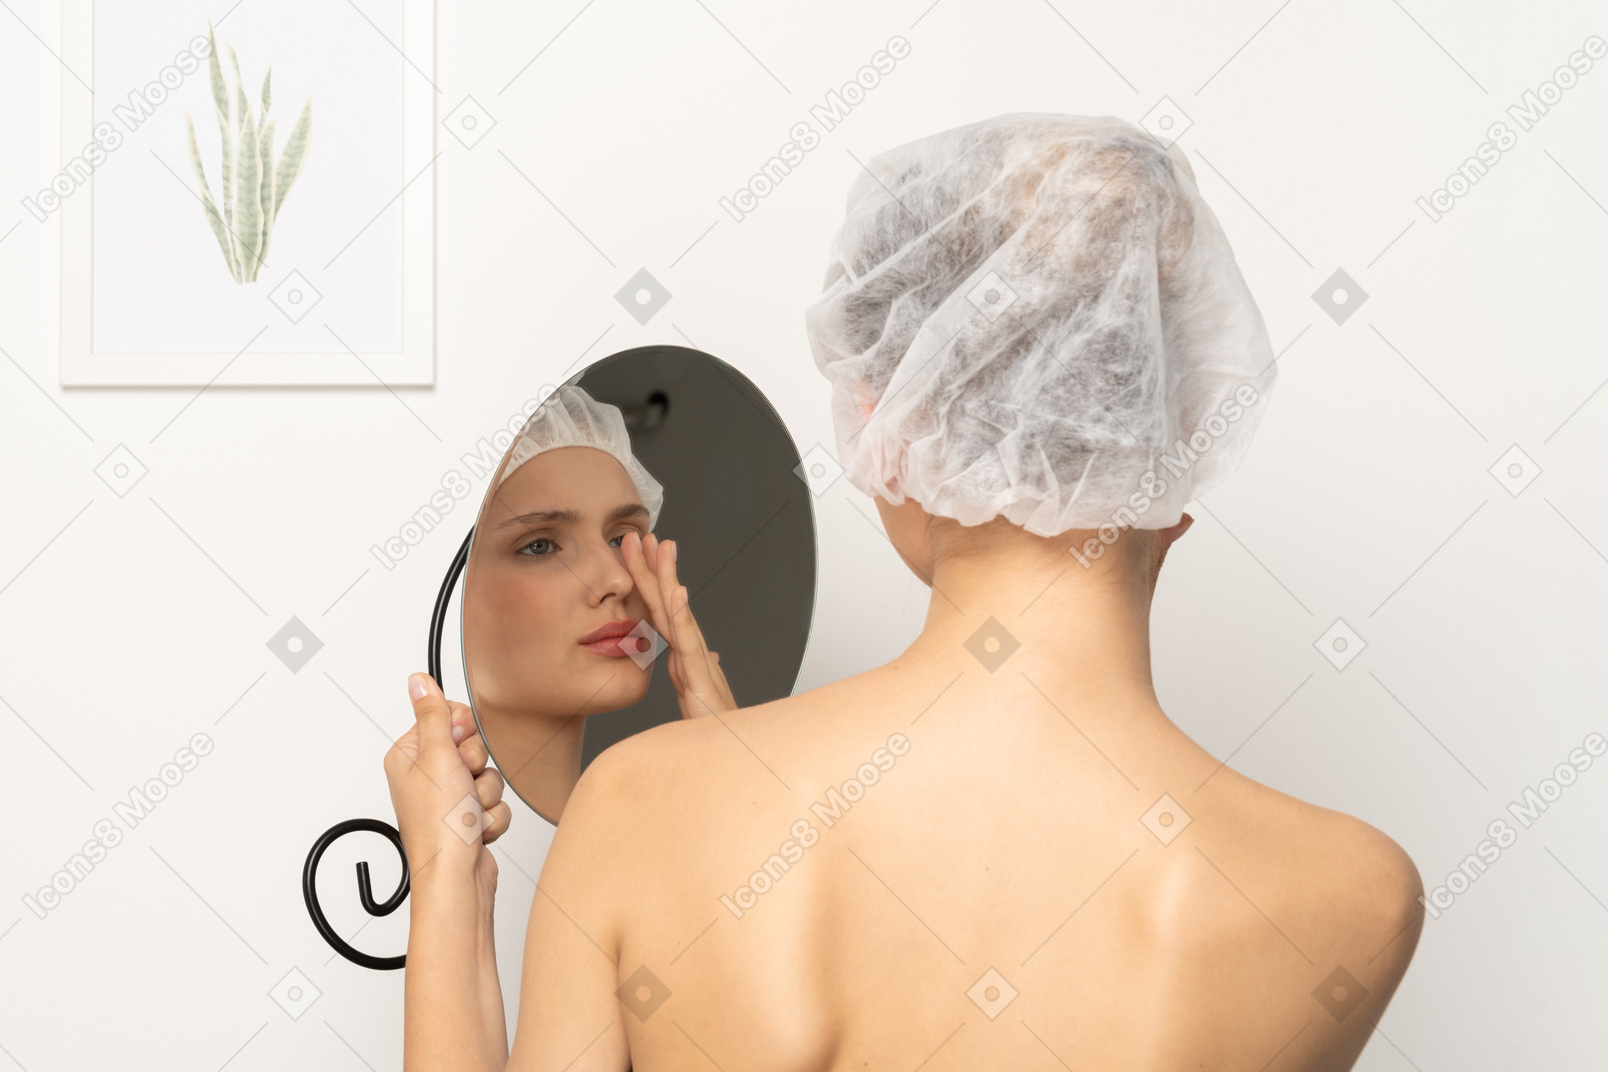 거울에 비친 자신의 모습을 바라보는 의료 모자를 쓴 불안한 여성